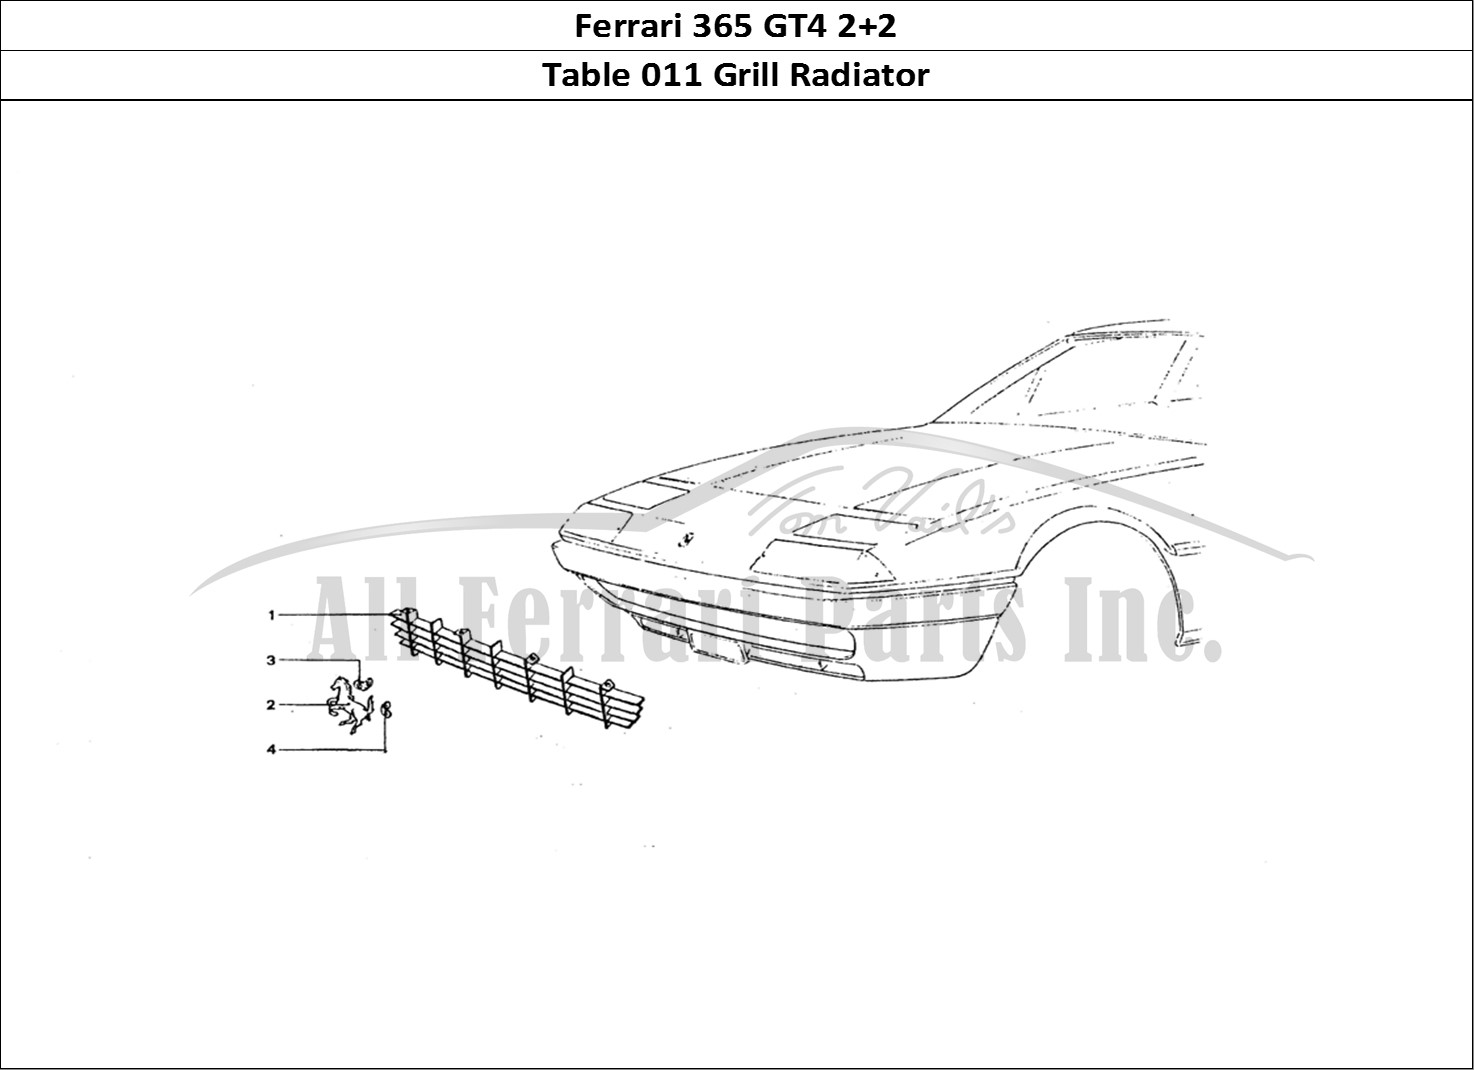 Ferrari Parts Ferrari 365 GT4 2+2 Coachwork Page 011 Front Grill